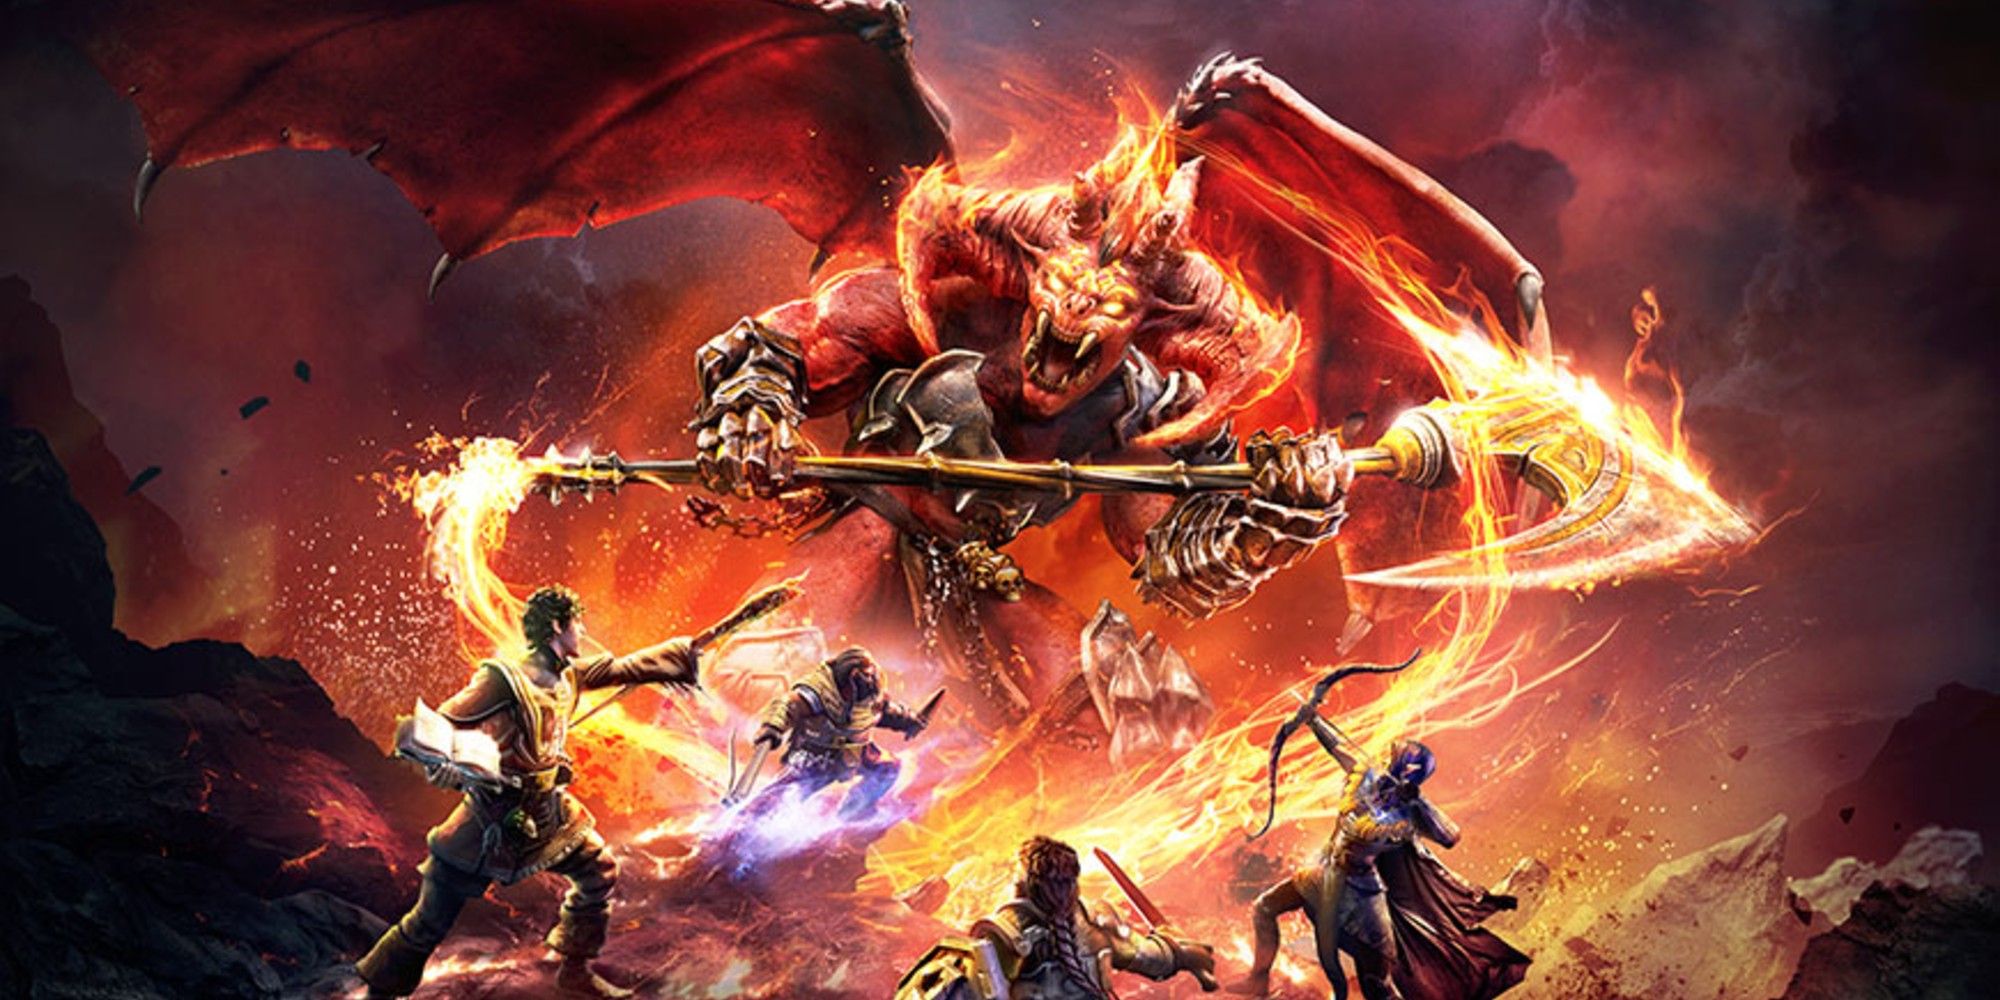 A DnD party battling a fiery beast wielding a giant, molten axe.